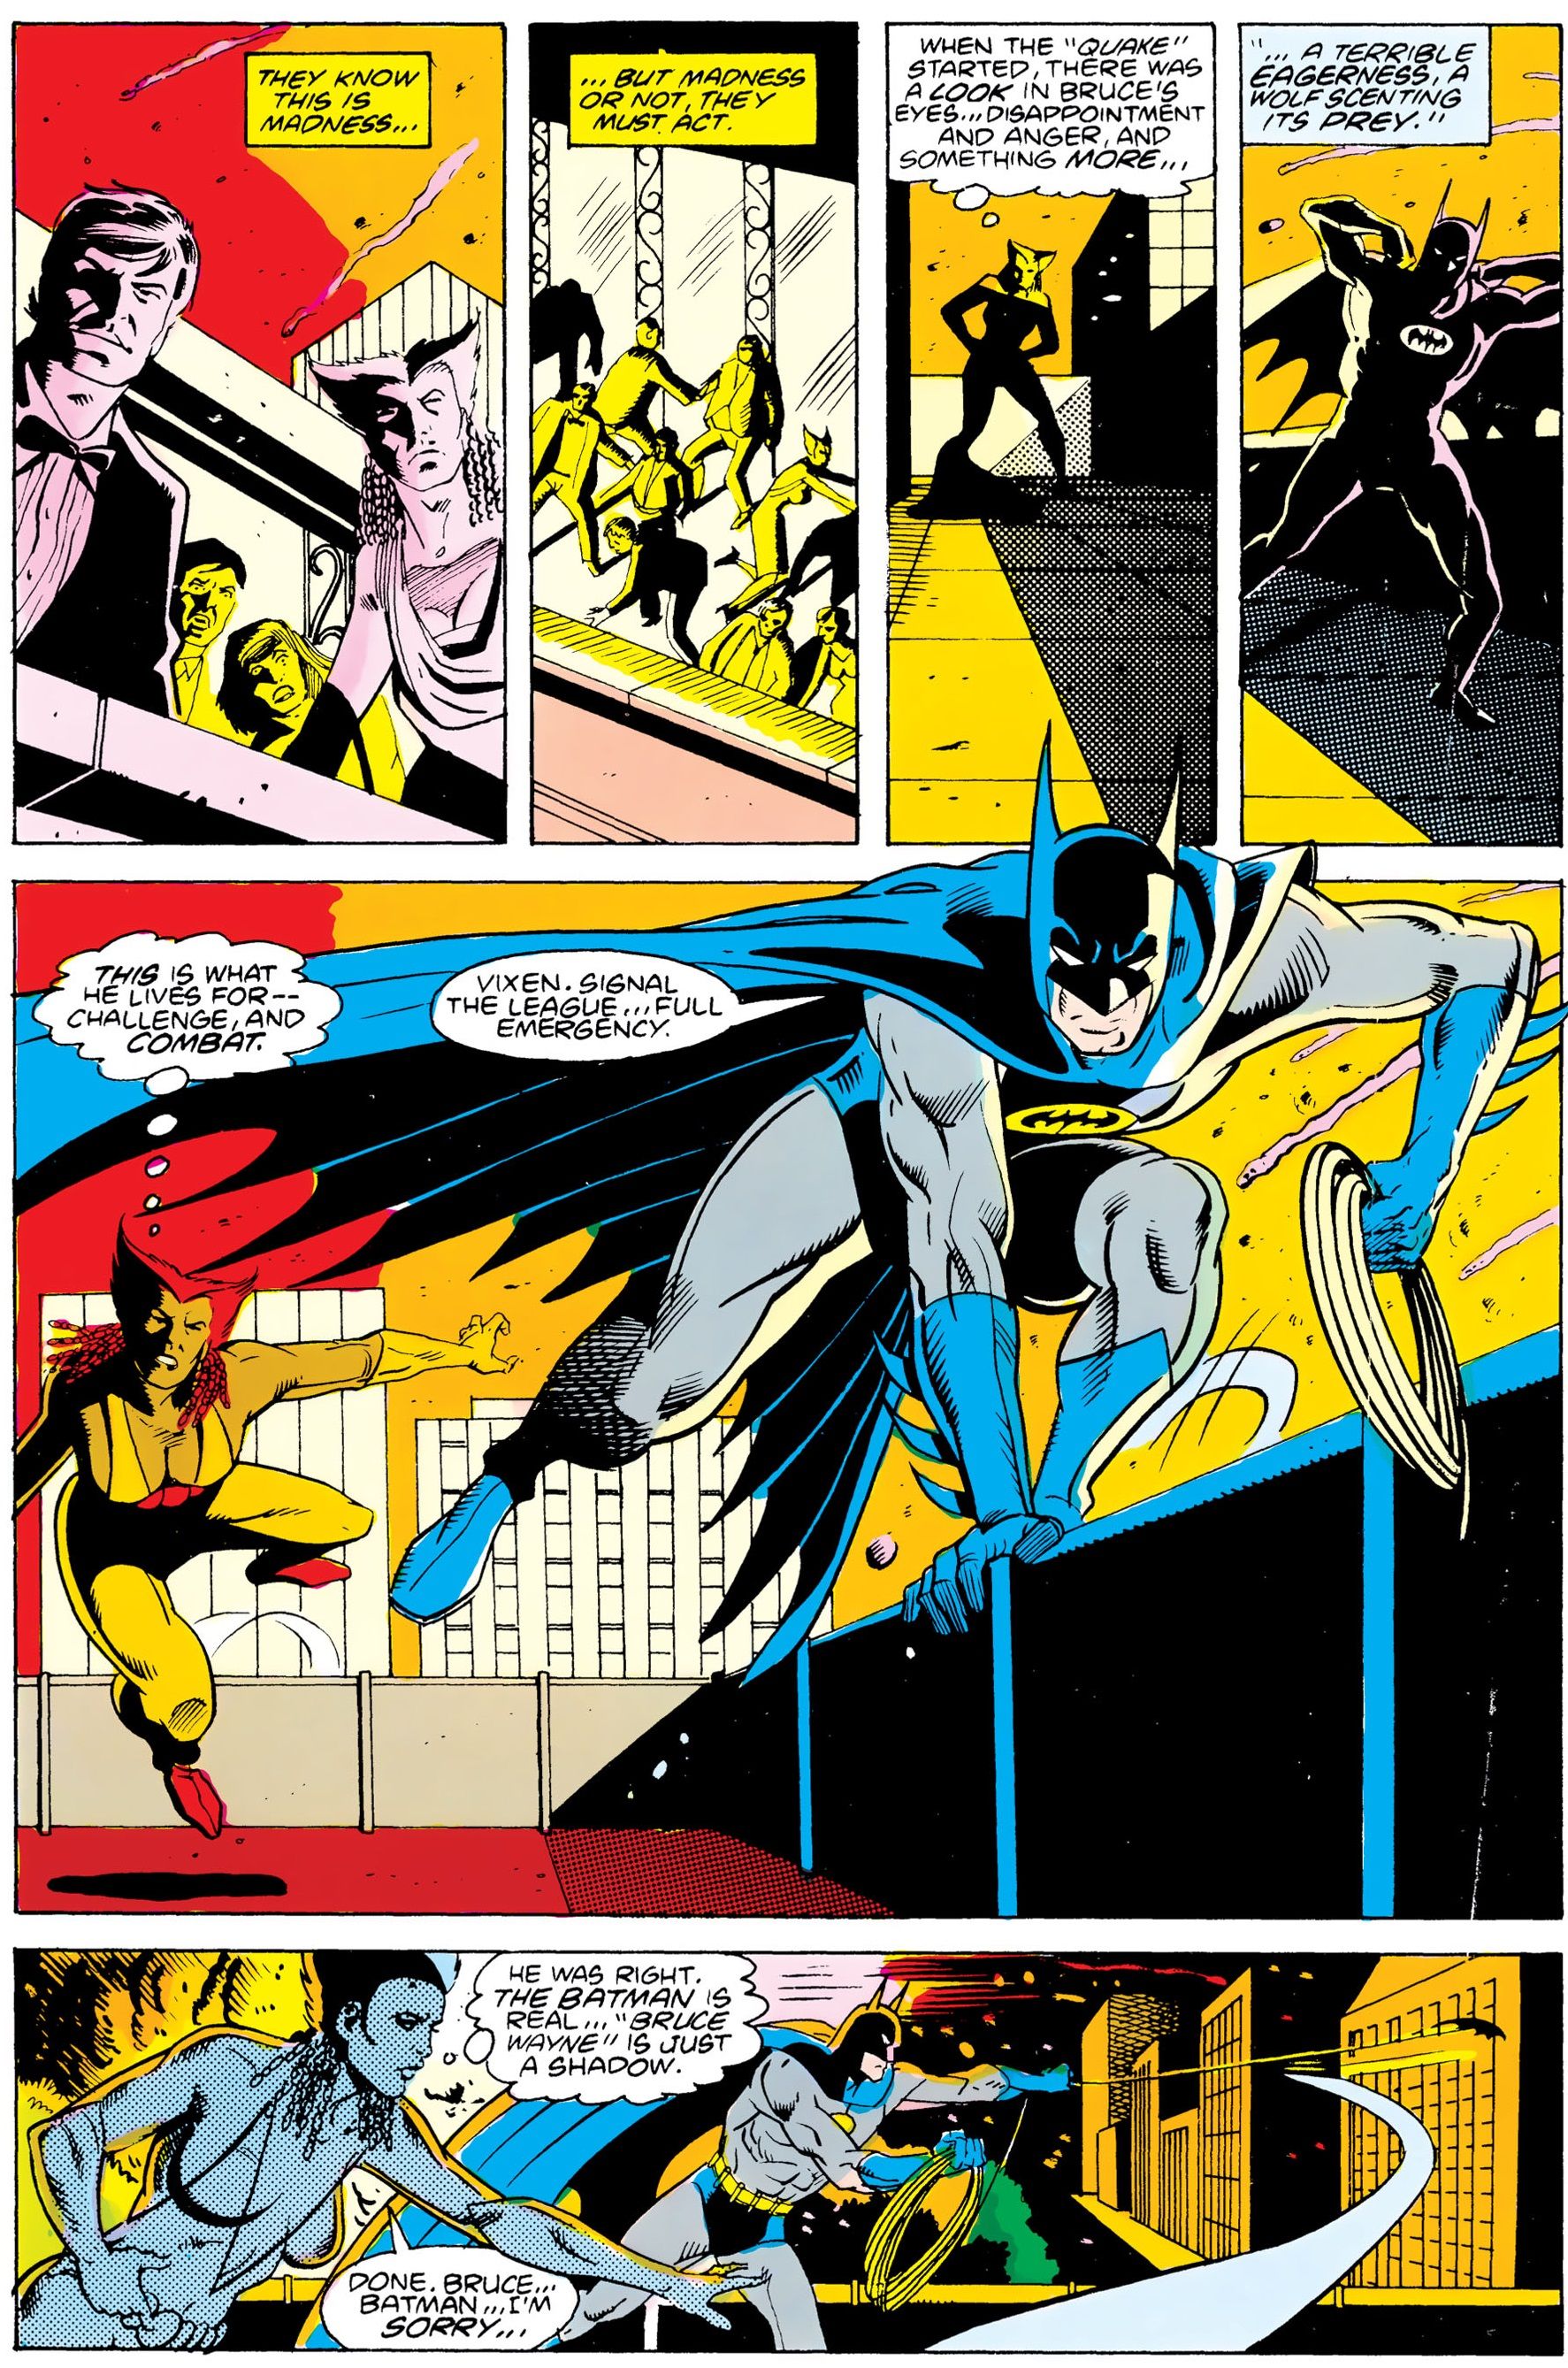 Batman and Vixen run into action